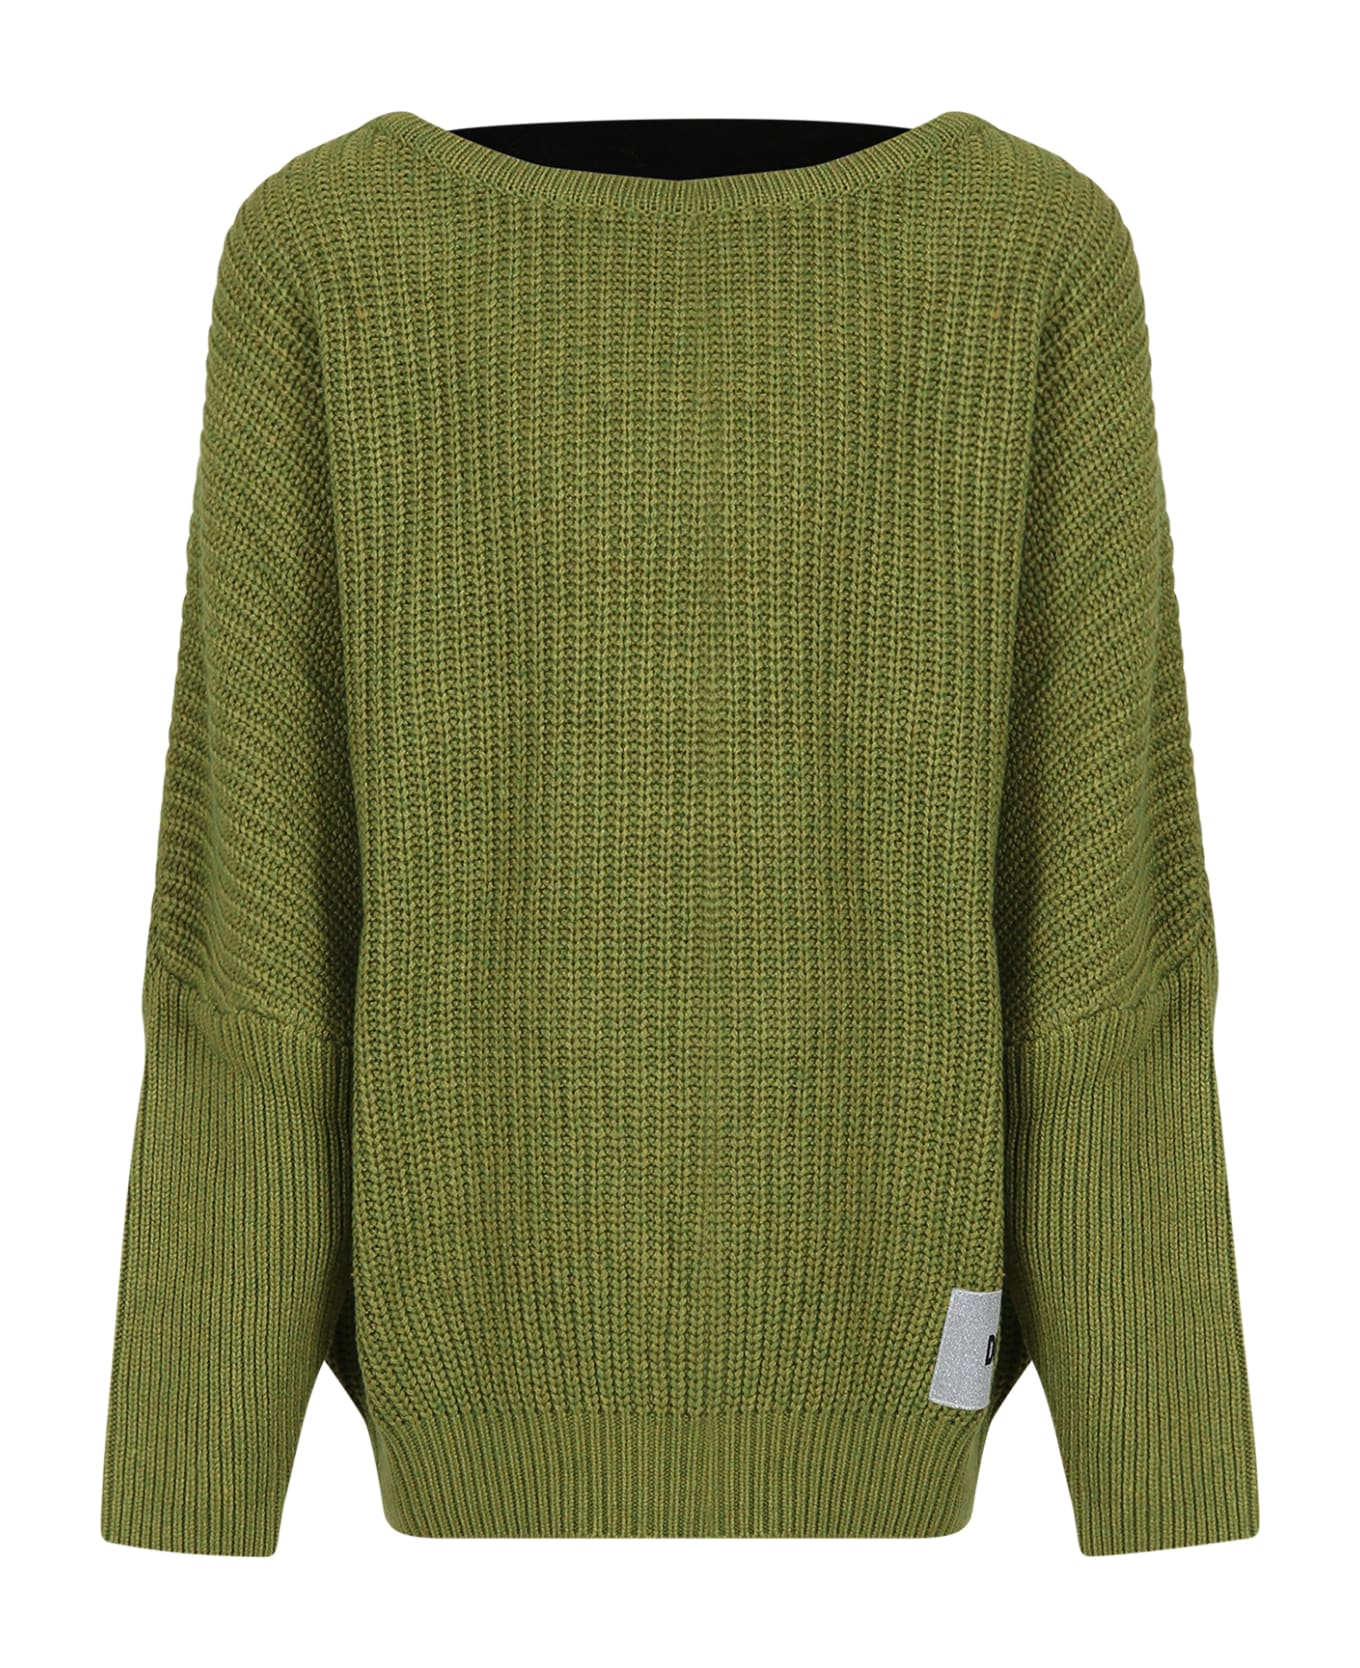 DKNY Green Sweater For Girl With Elastic Logo - Green ニットウェア＆スウェットシャツ